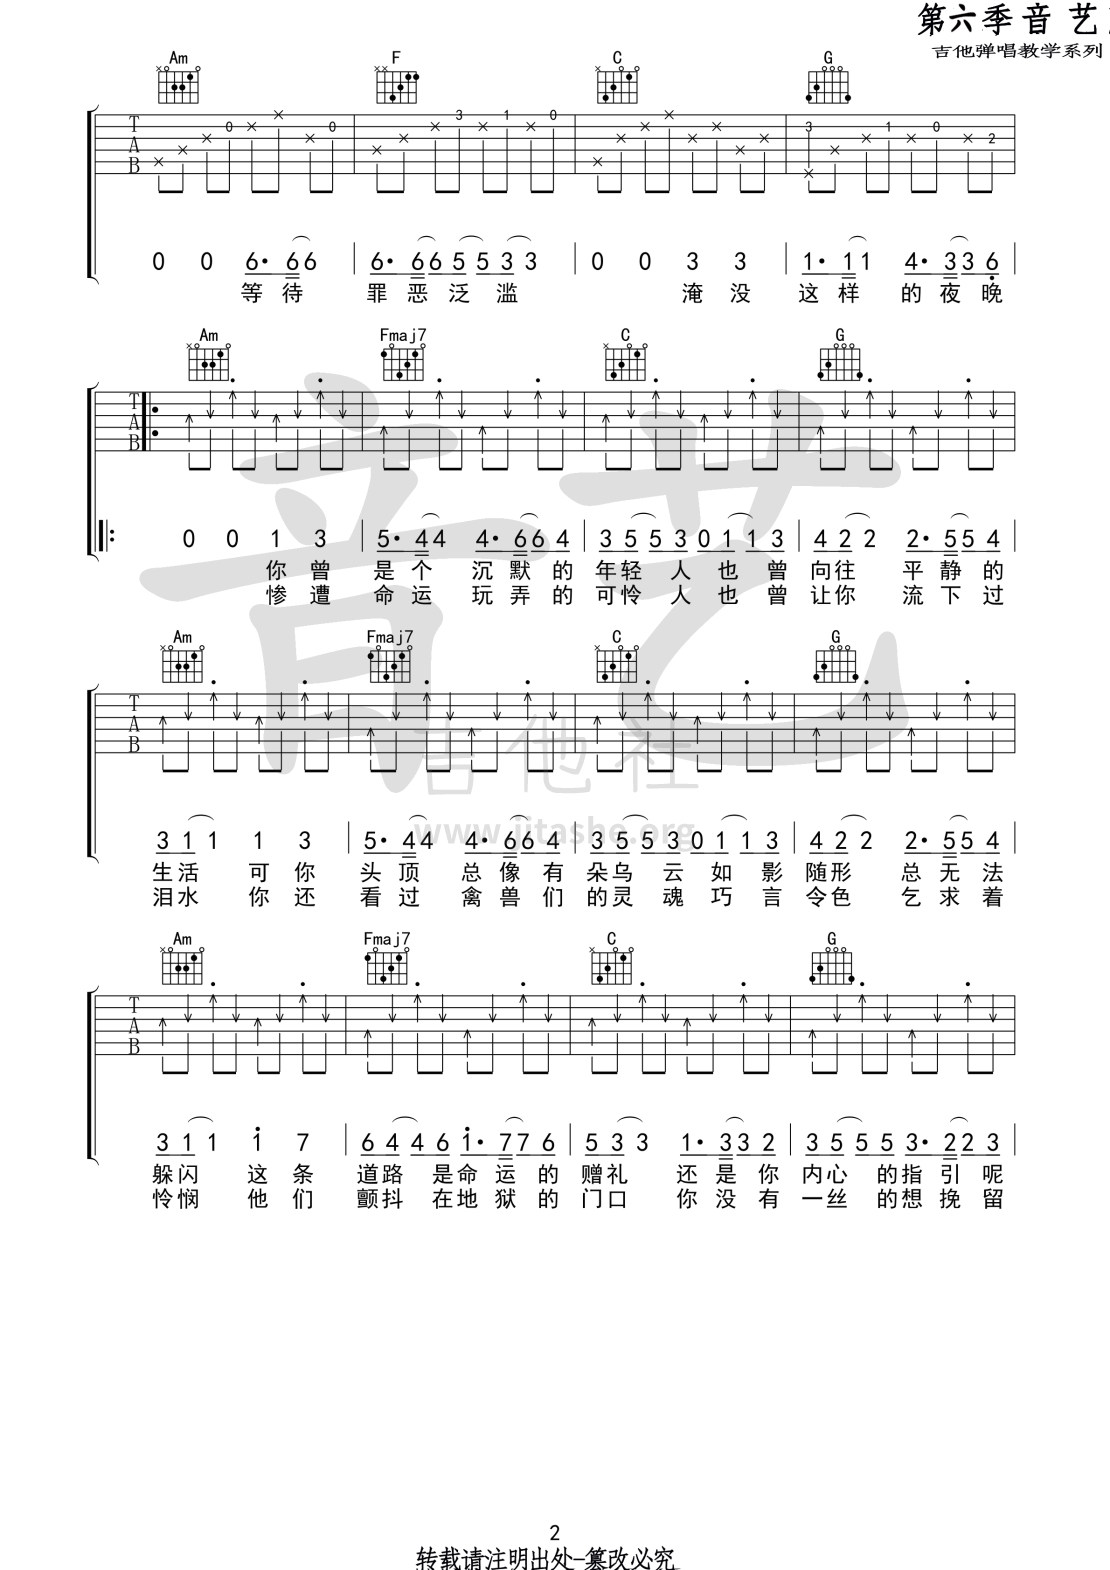 【吉他教学】《反方向的钟》周杰伦-吉他弹唱教学教程-完整版-大树音乐屋_哔哩哔哩_bilibili